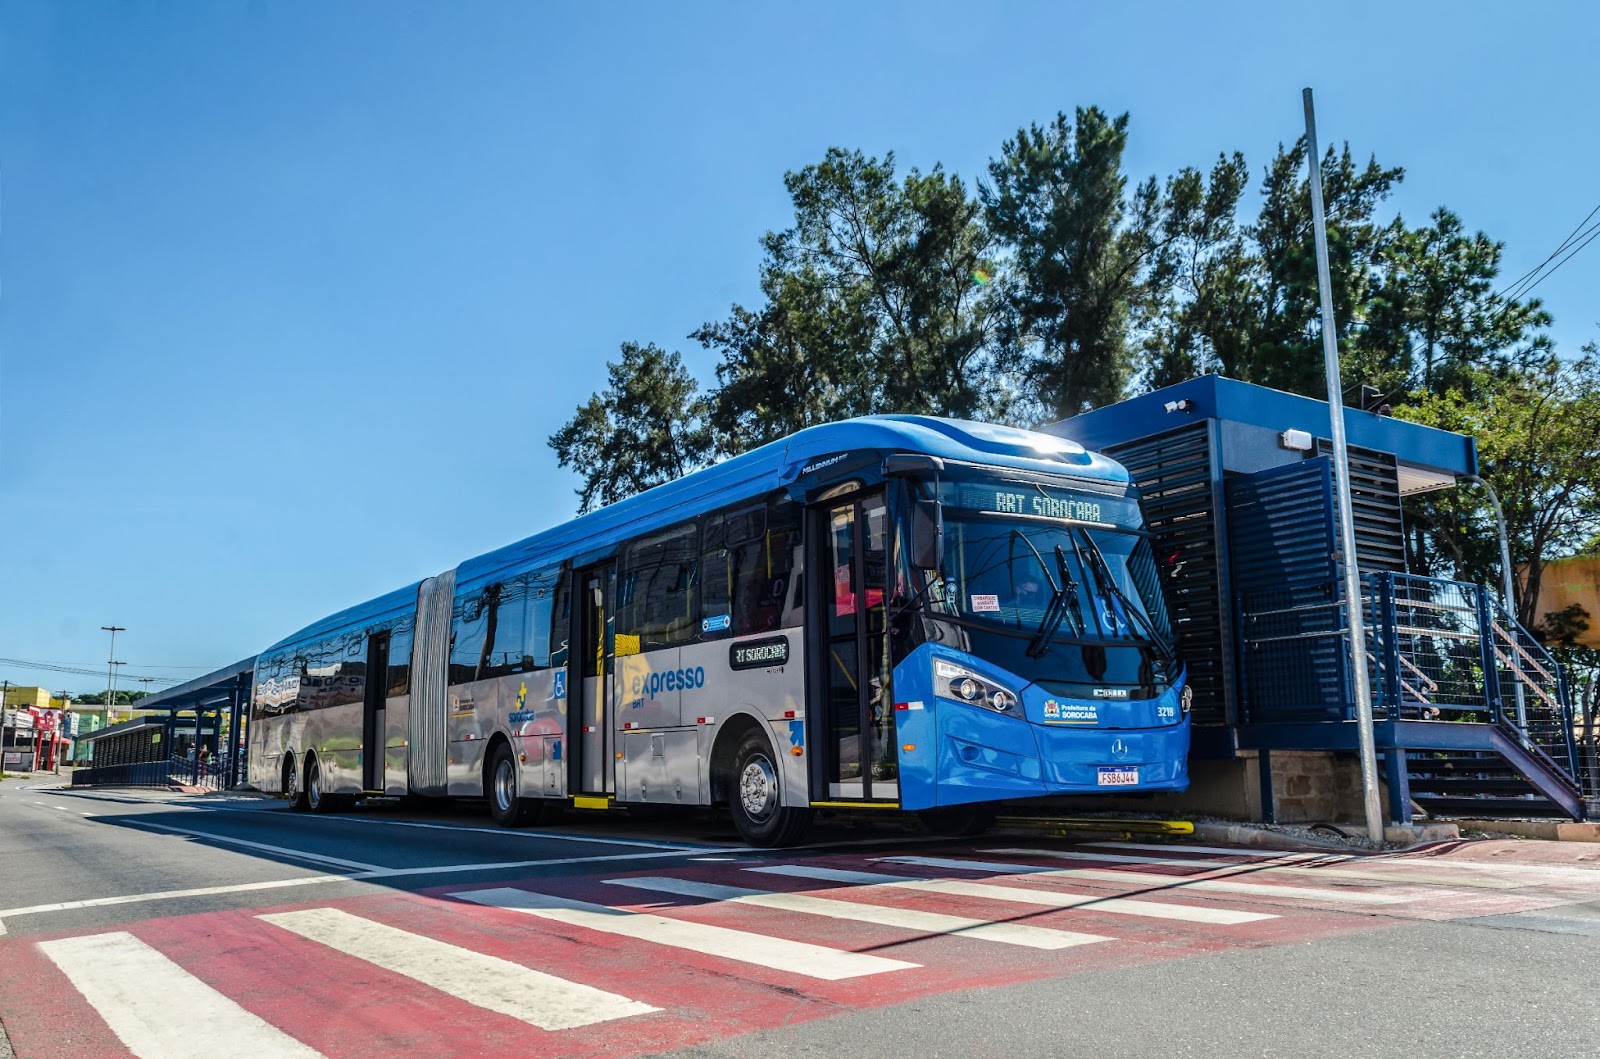 Llevar las últimas innovaciones en tecnología de planificación del transporte al BRT Sorocaba mejorará los servicios para 1,6 millones de pasajeros mensuales